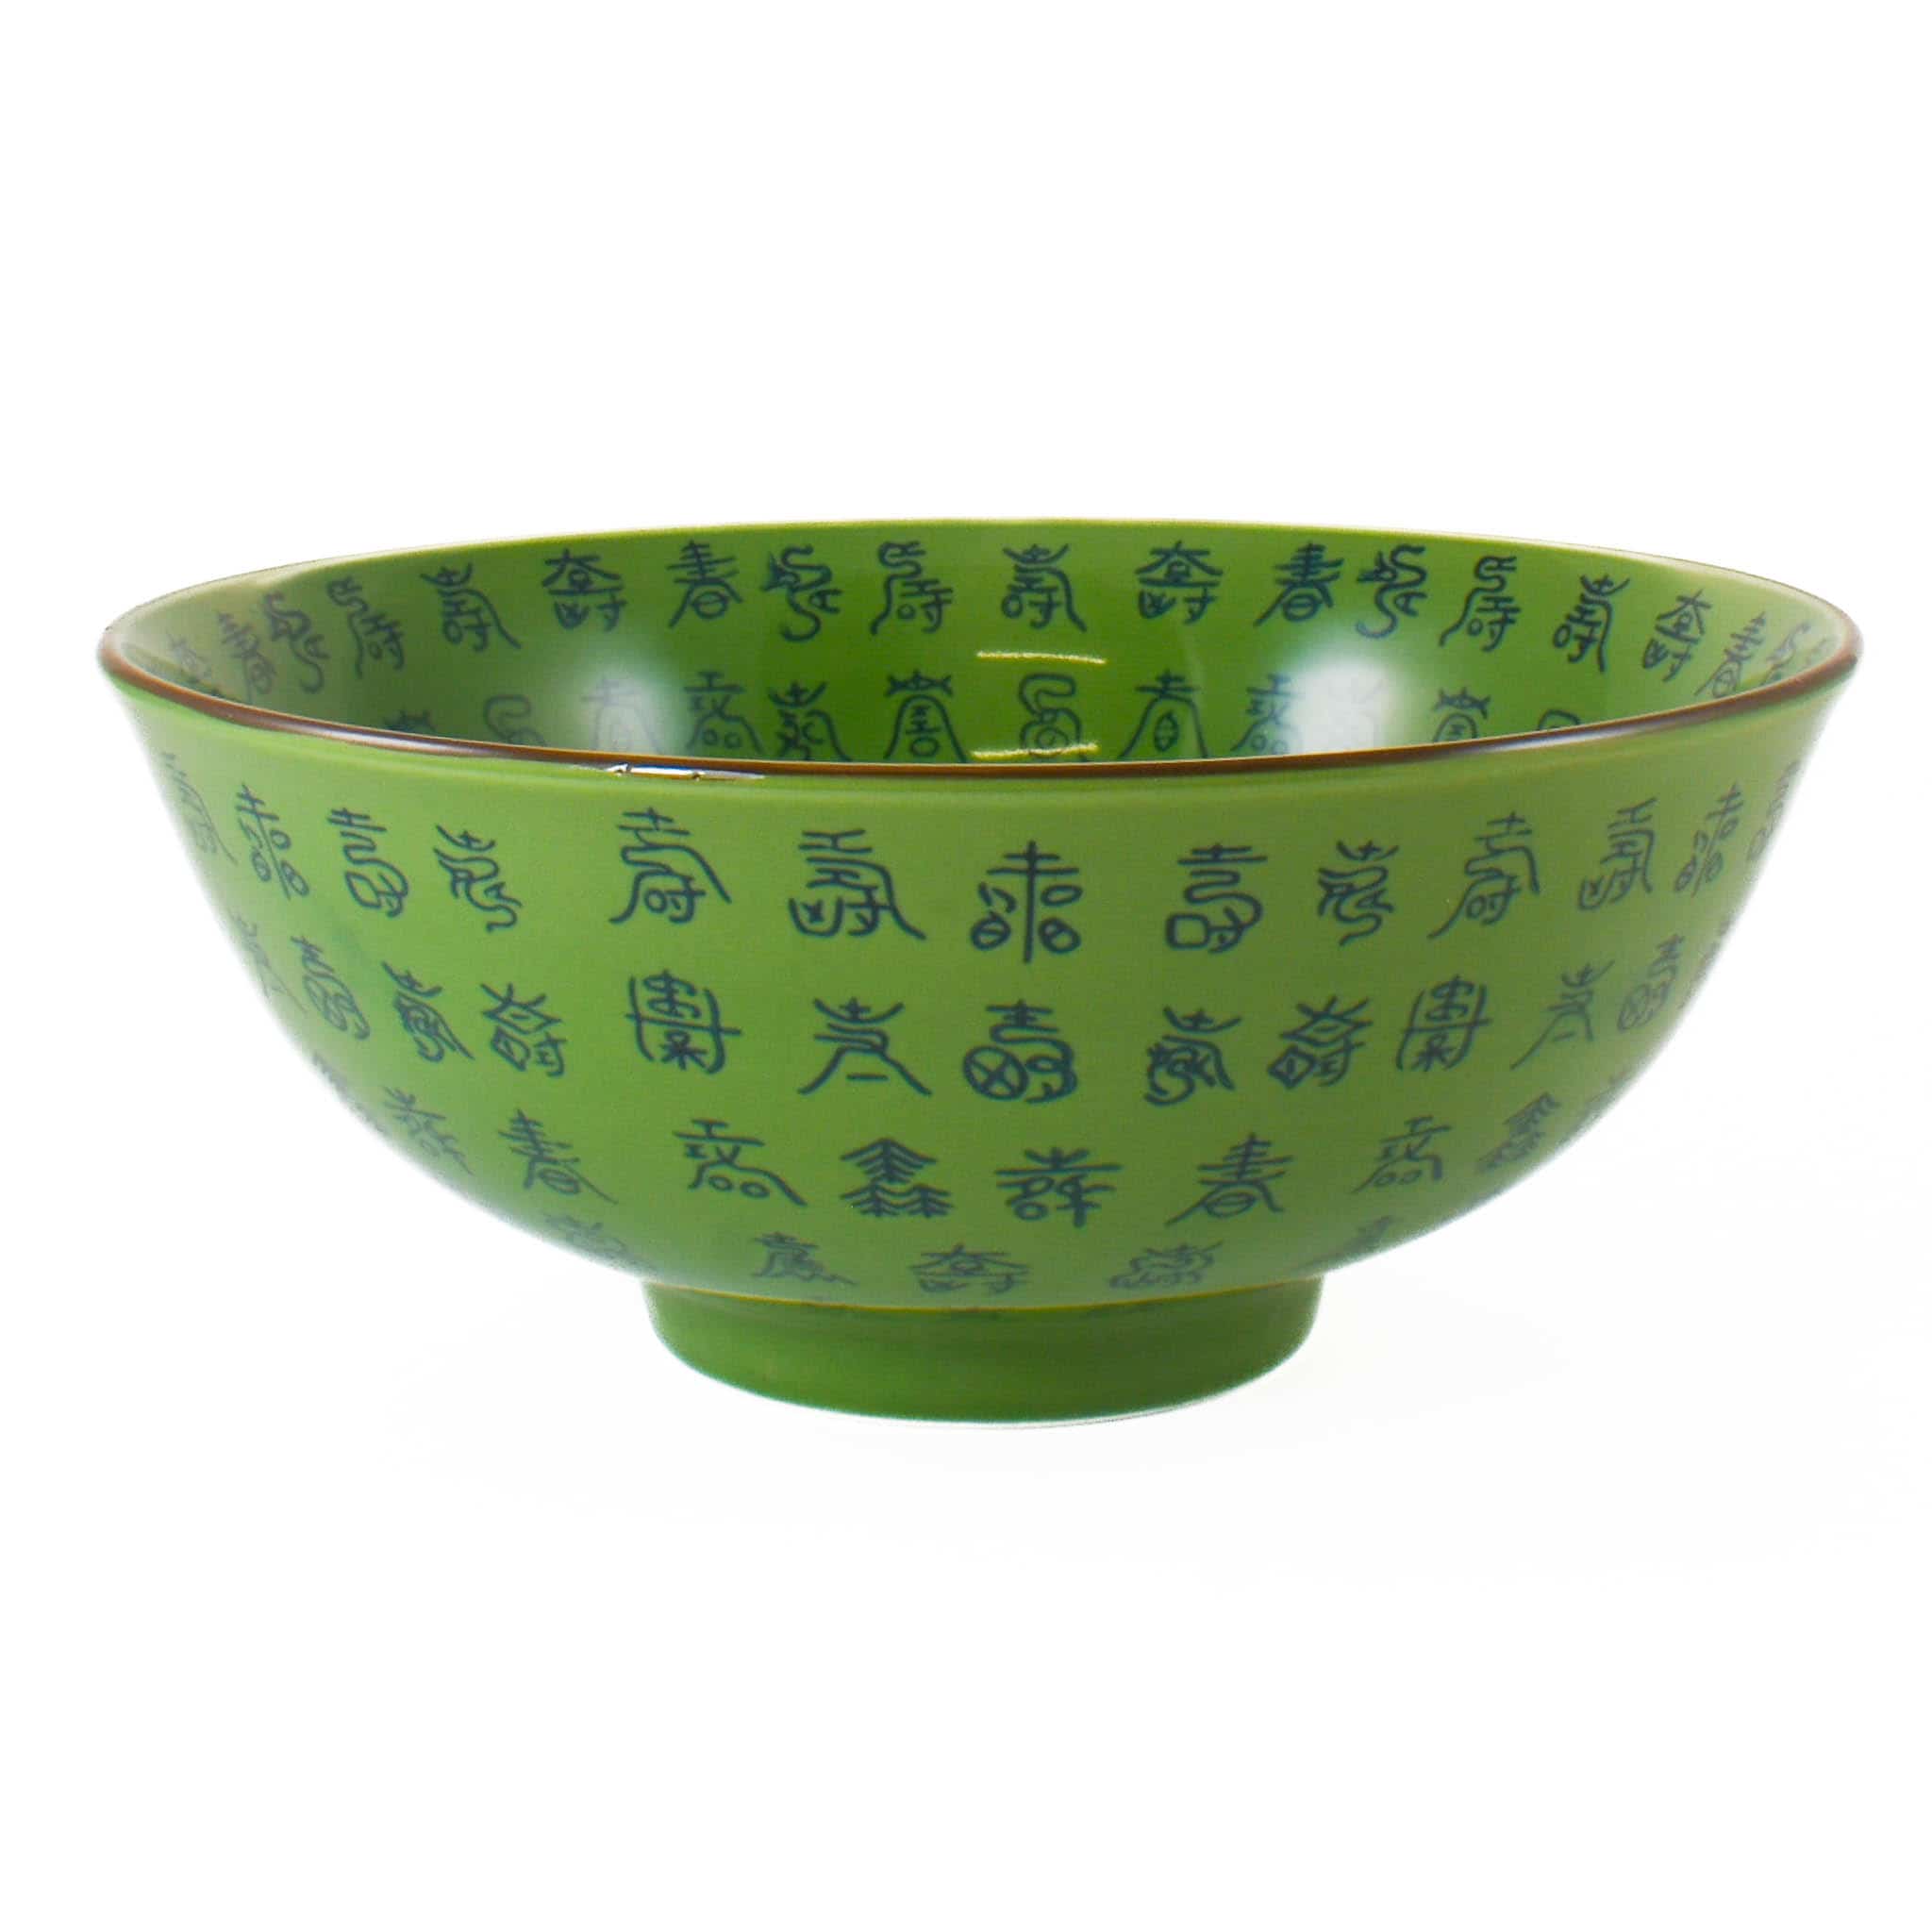 Green Chinese Ceramic Large Bowl, 22cm